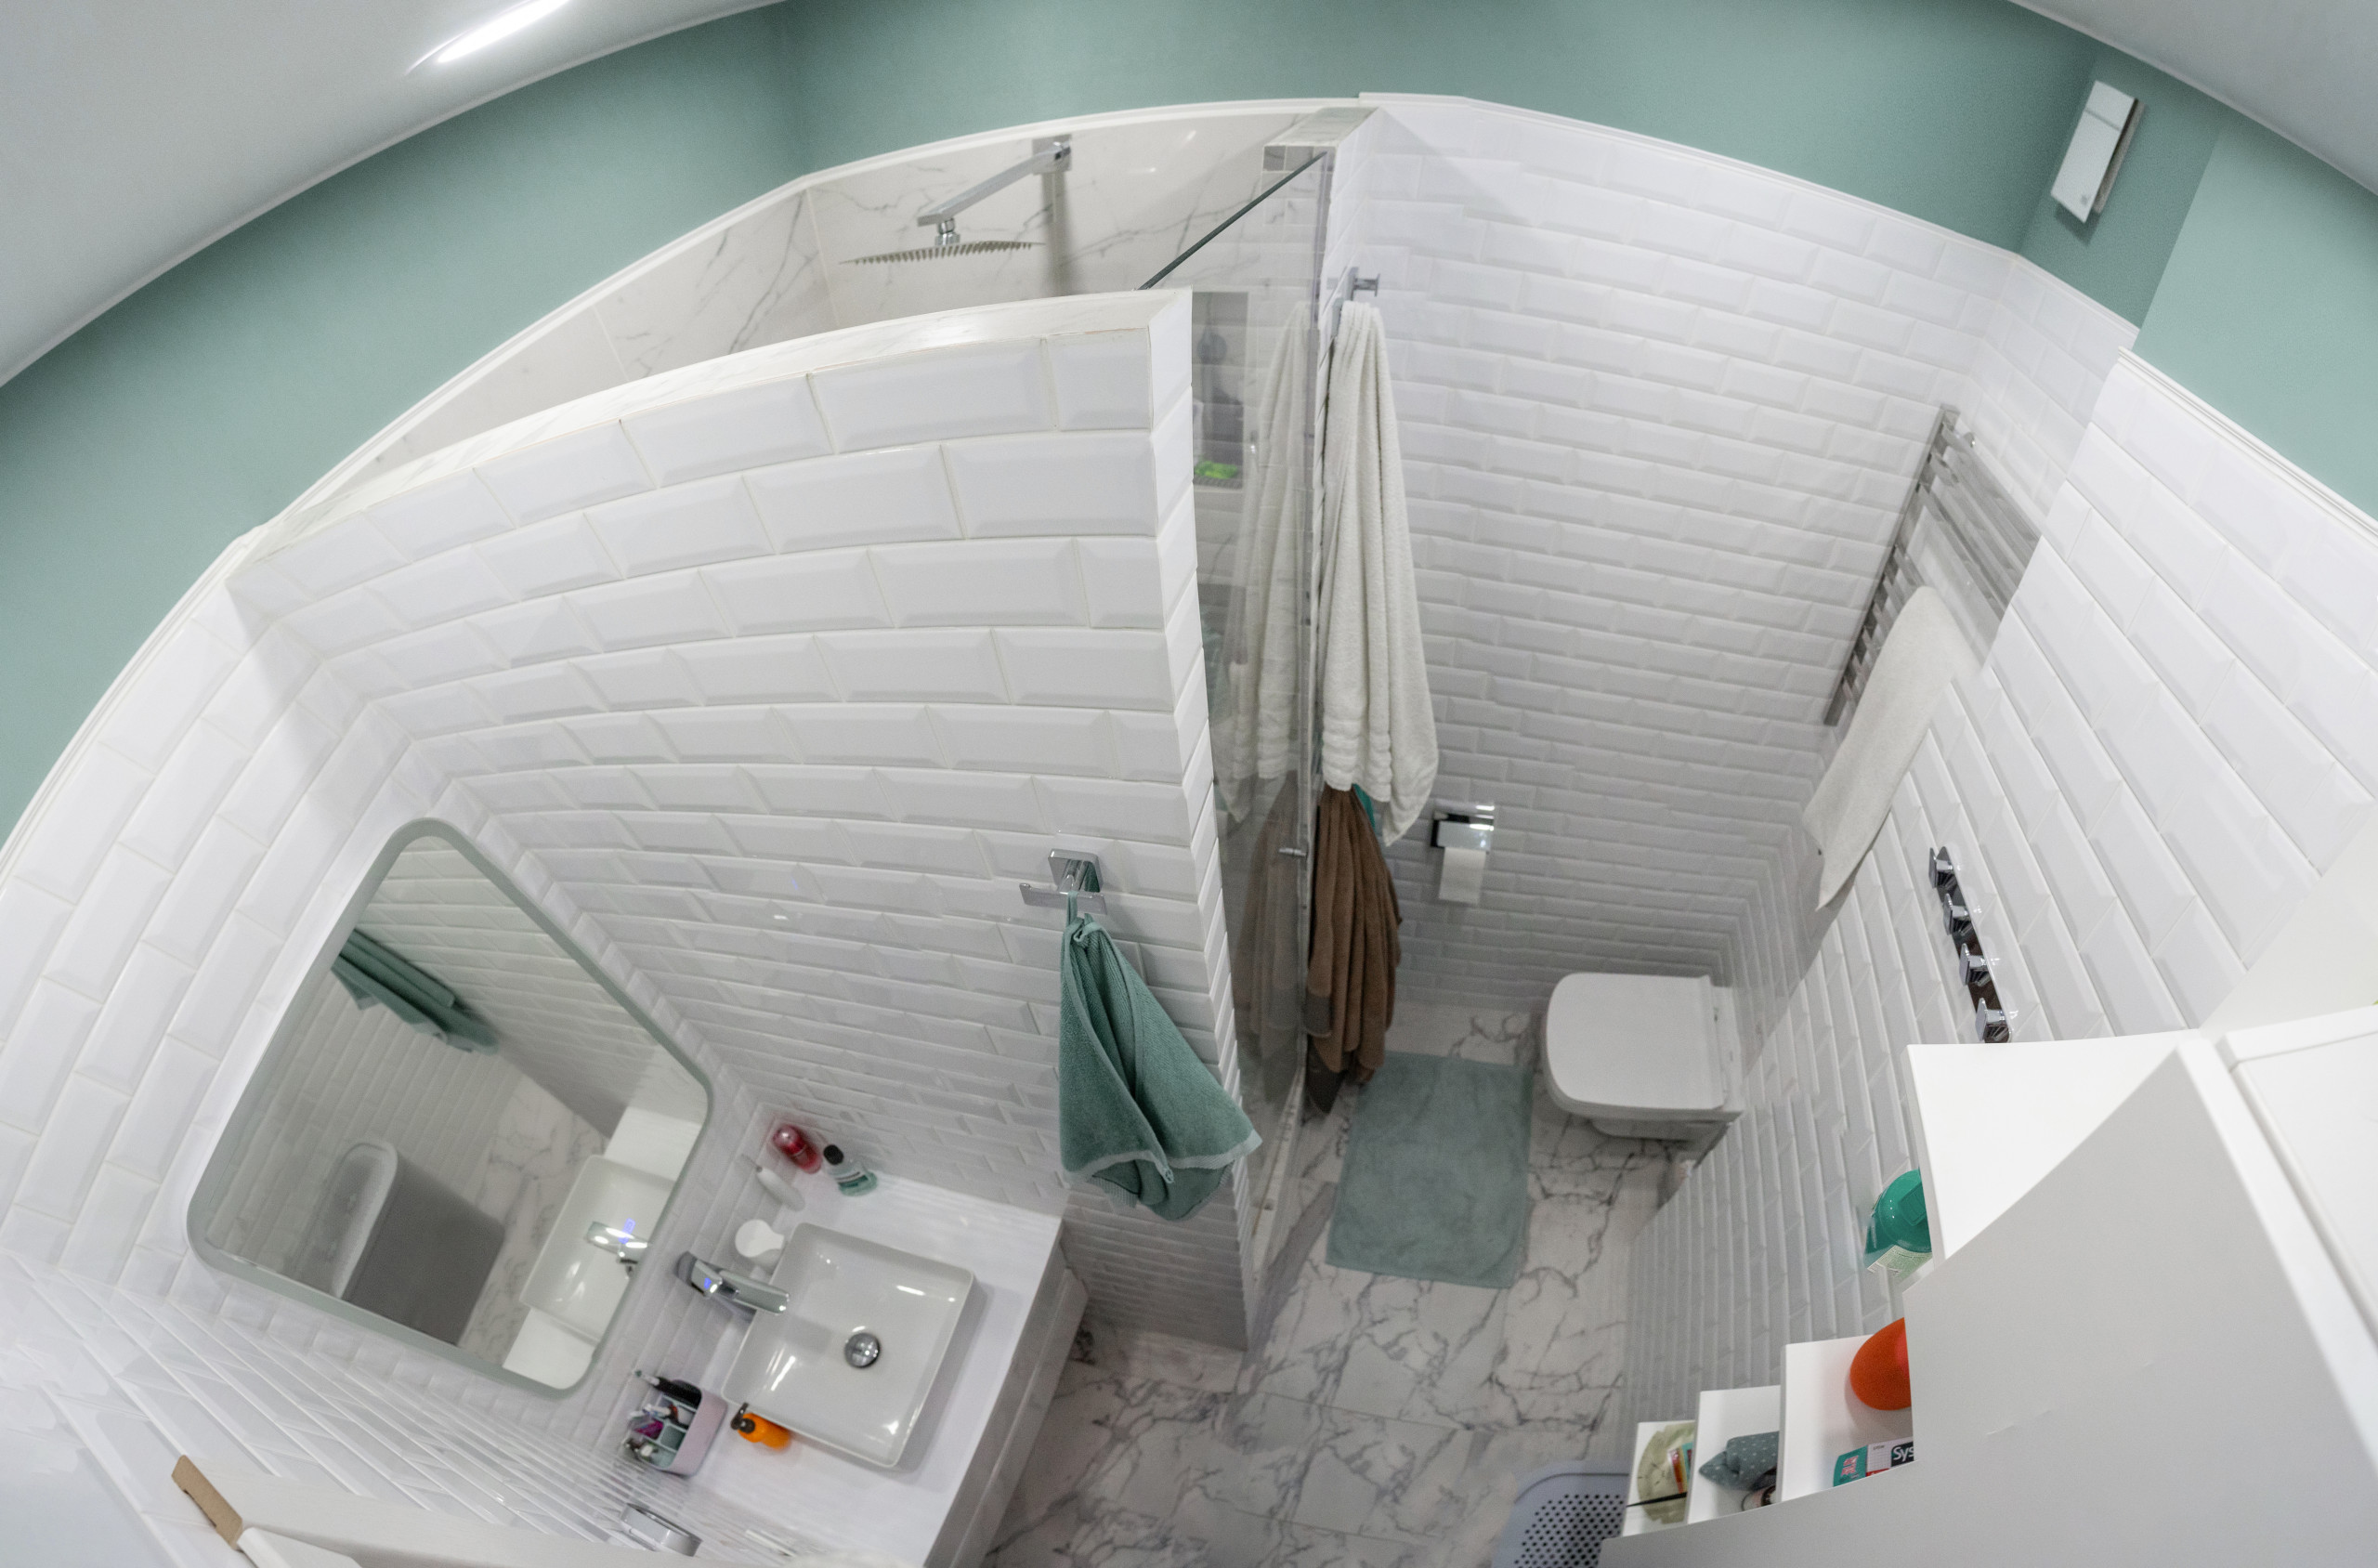 Ванная комната в бело-зеленых тонах